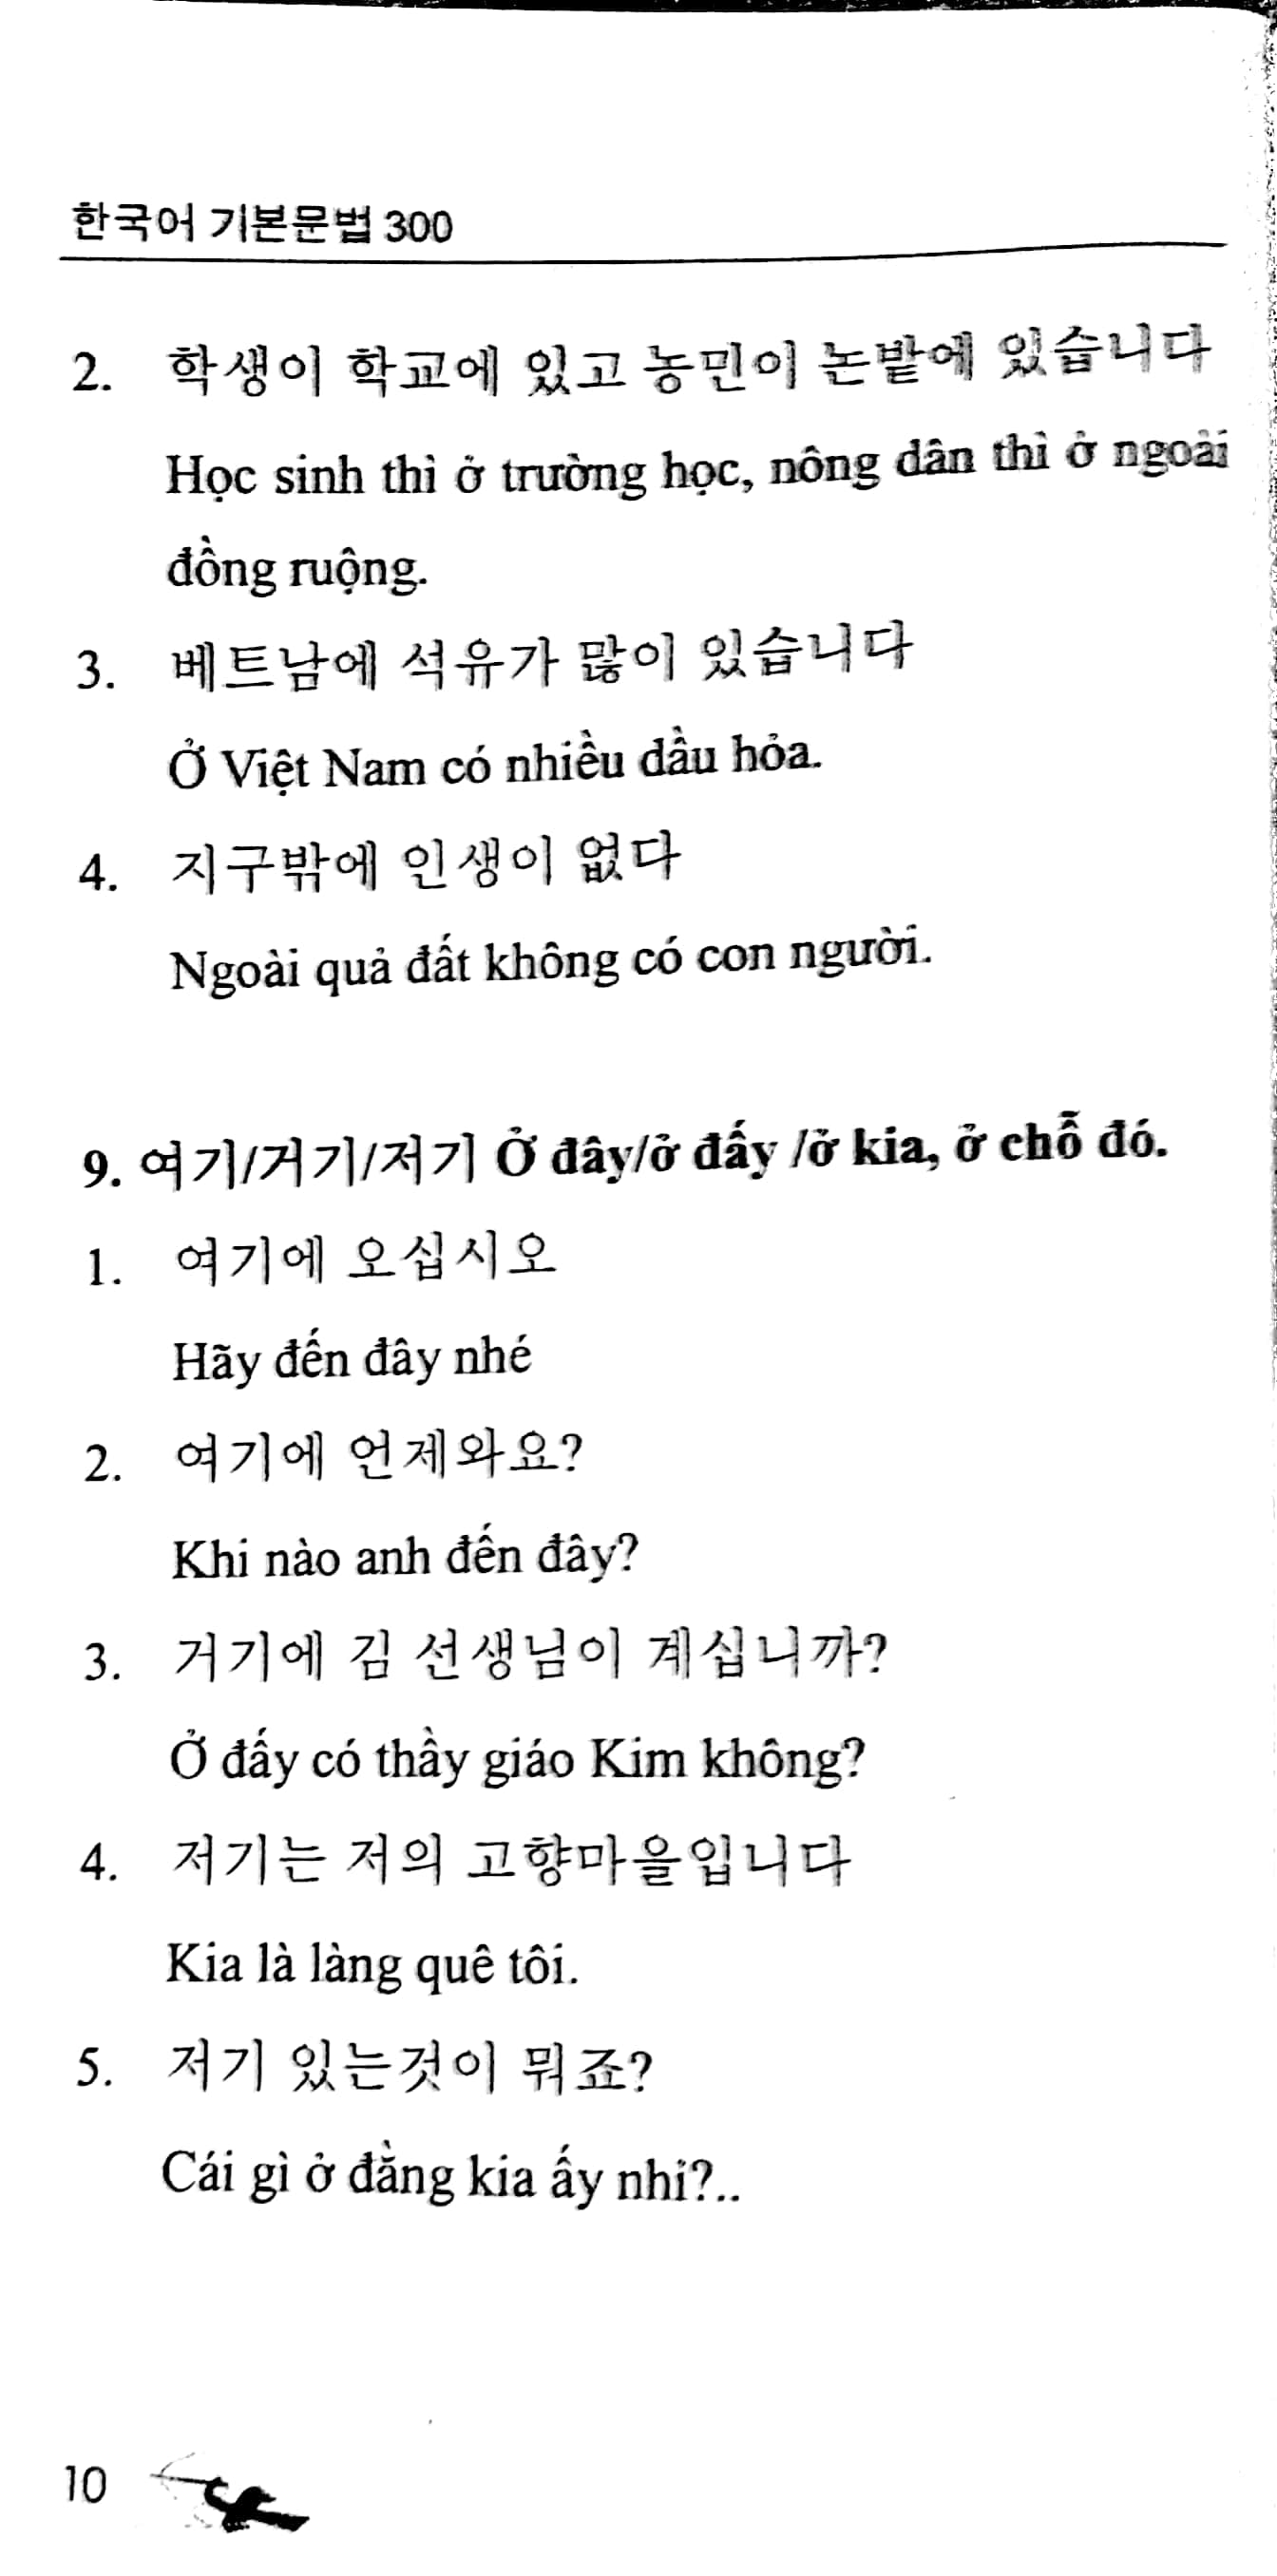 300 Cấu Trúc Ngữ Pháp Cơ Bản Tiếng Hàn PDF